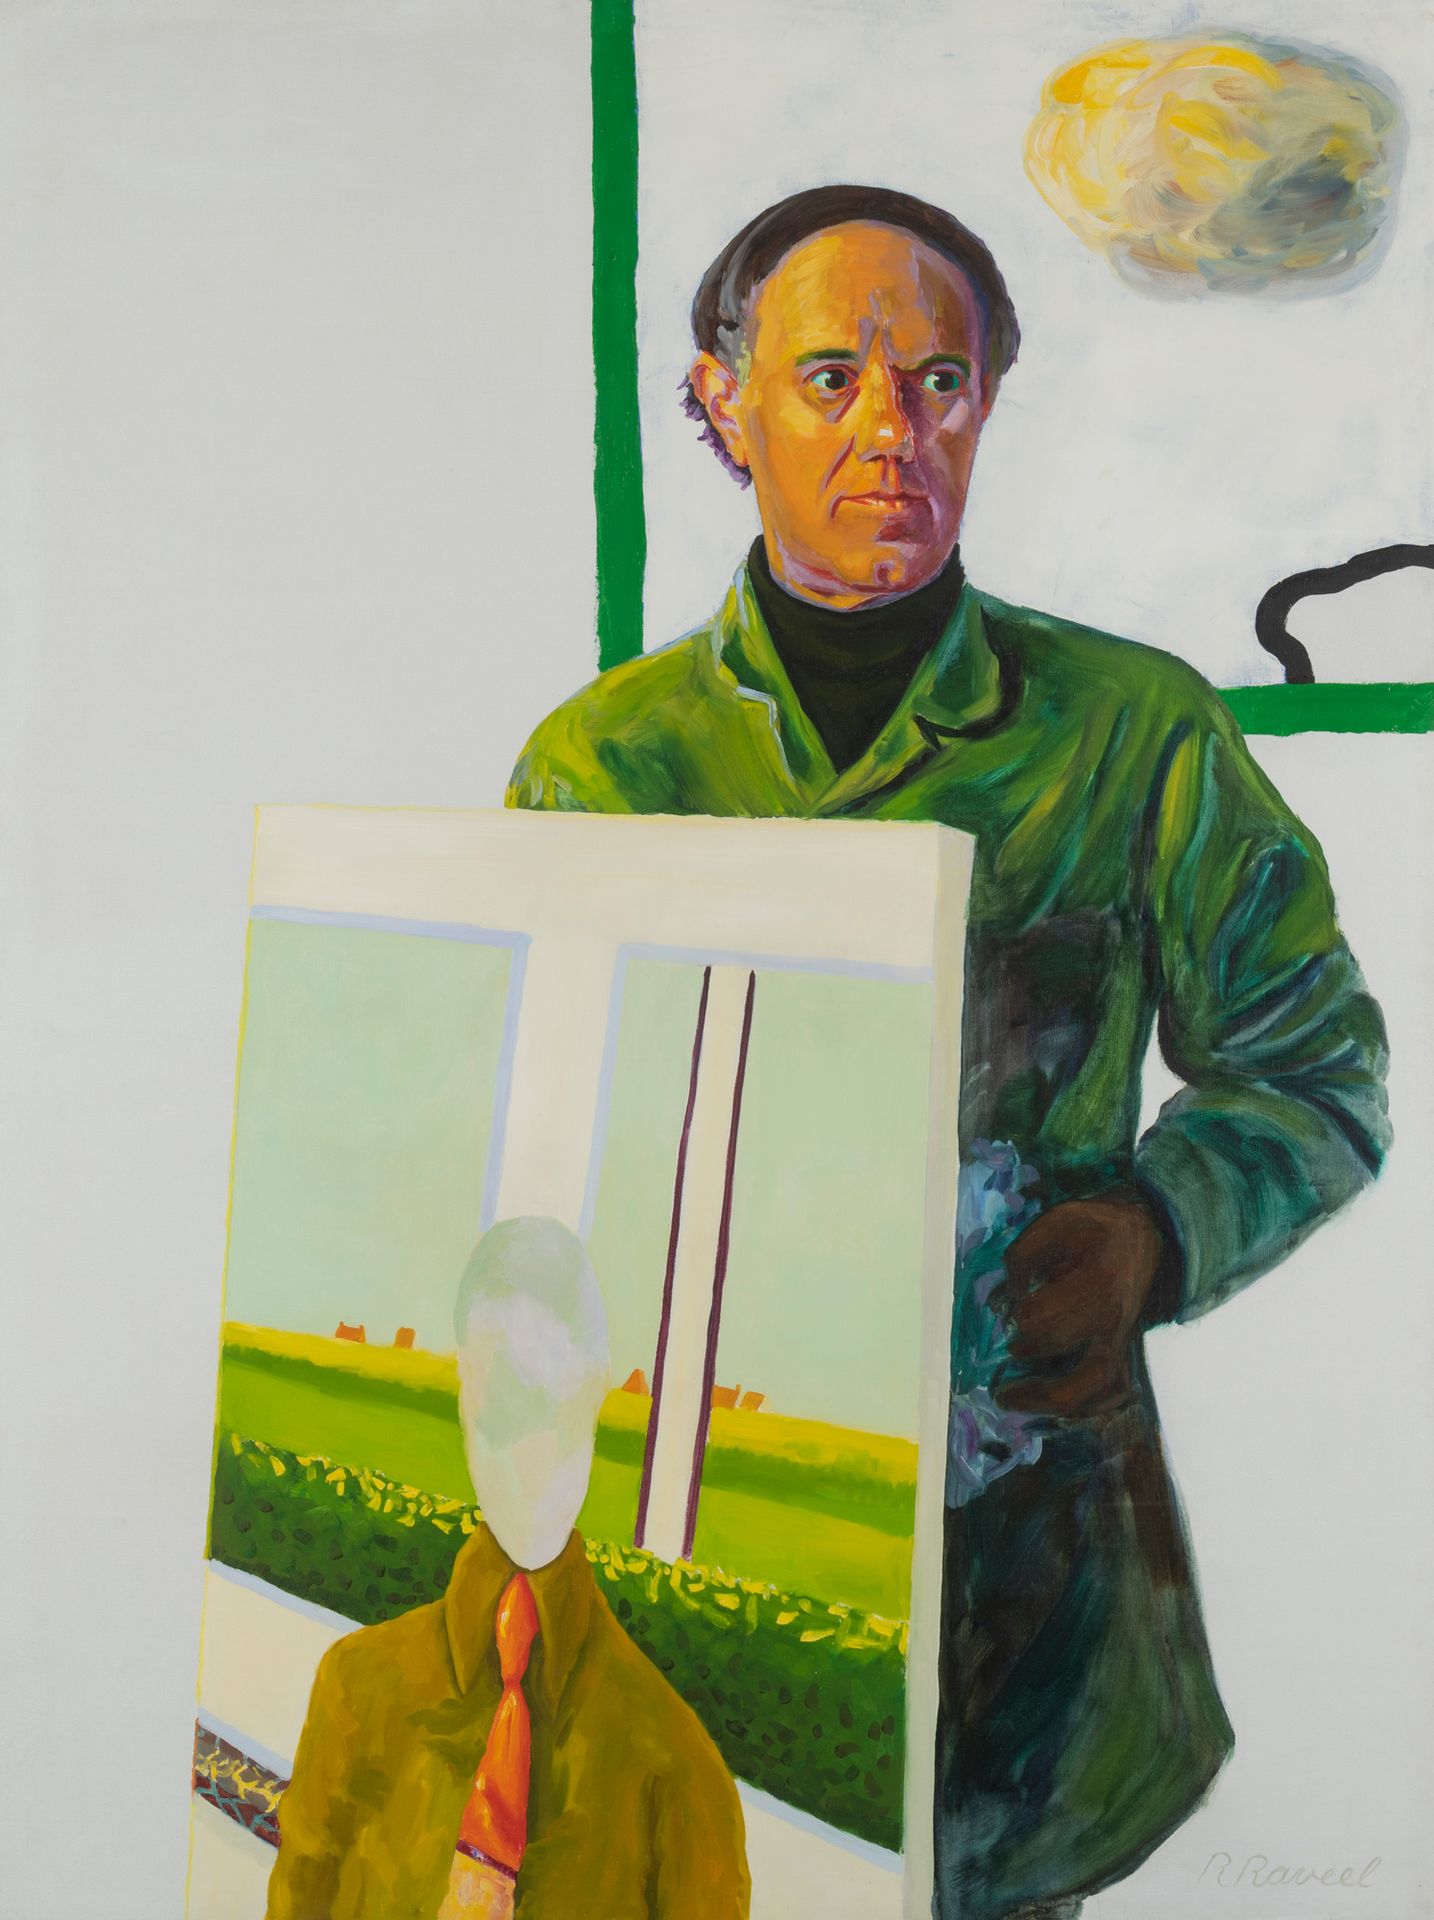 ROGER RAVEEL (1921-2013) Zelfportret met schilderij, 1974
Oil on canvas.
Signed &hellip;